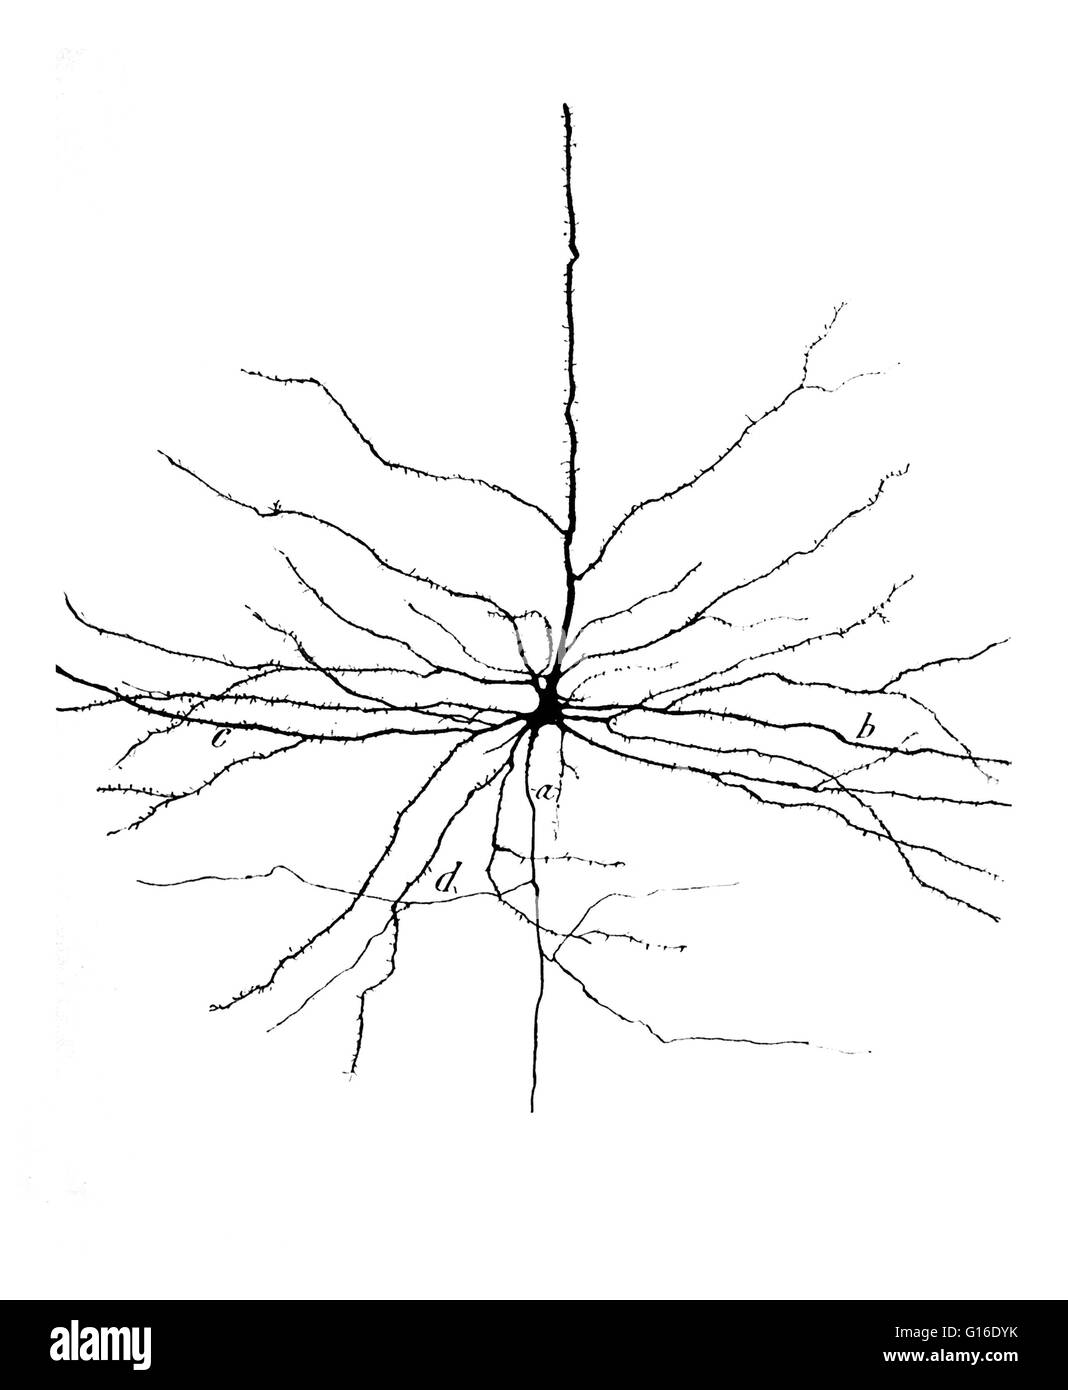 Zeichnung einer pyramidenförmigen Zelle in der zerebralen motorische Kortex von Santiago Ramón y Cajal (1852-1934). Pyramidale Neuronen (Pyramidenzellen) sind eine Art von Neuron in Bereichen des Gehirns einschließlich der Großhirnrinde, dem Hippocampus und der Amygdala gefunden. Pyramida Stockfoto